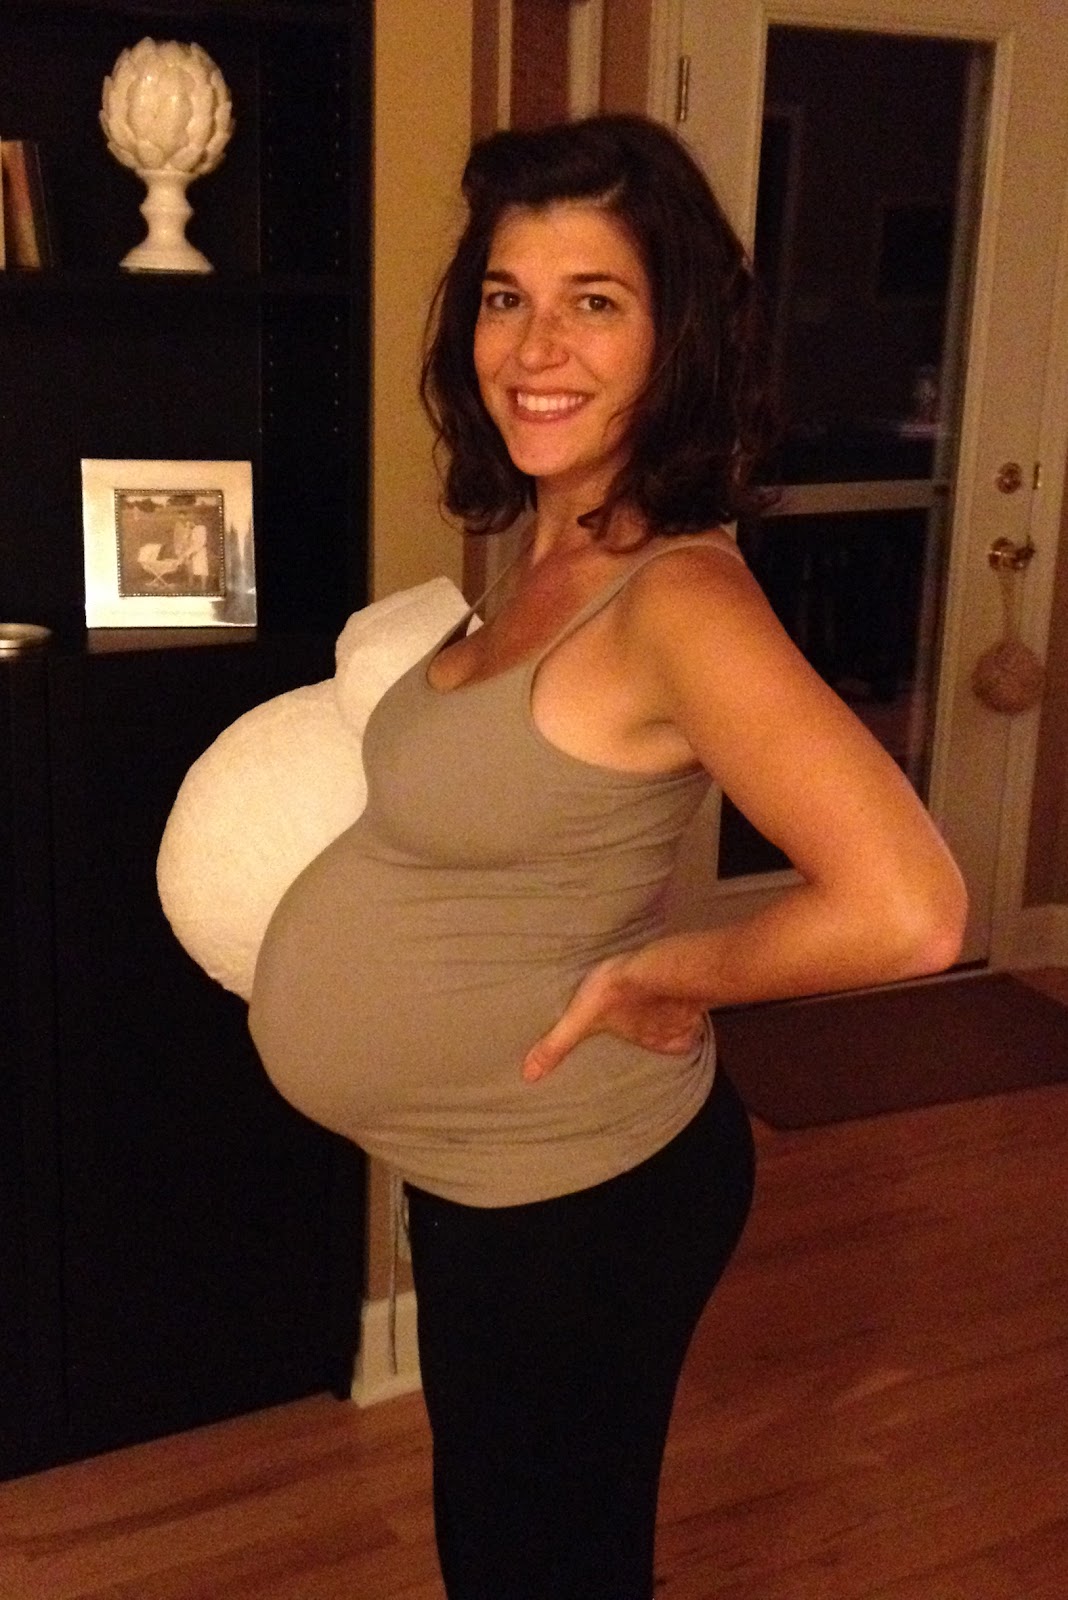 amateur 8 month pregnant crackhead